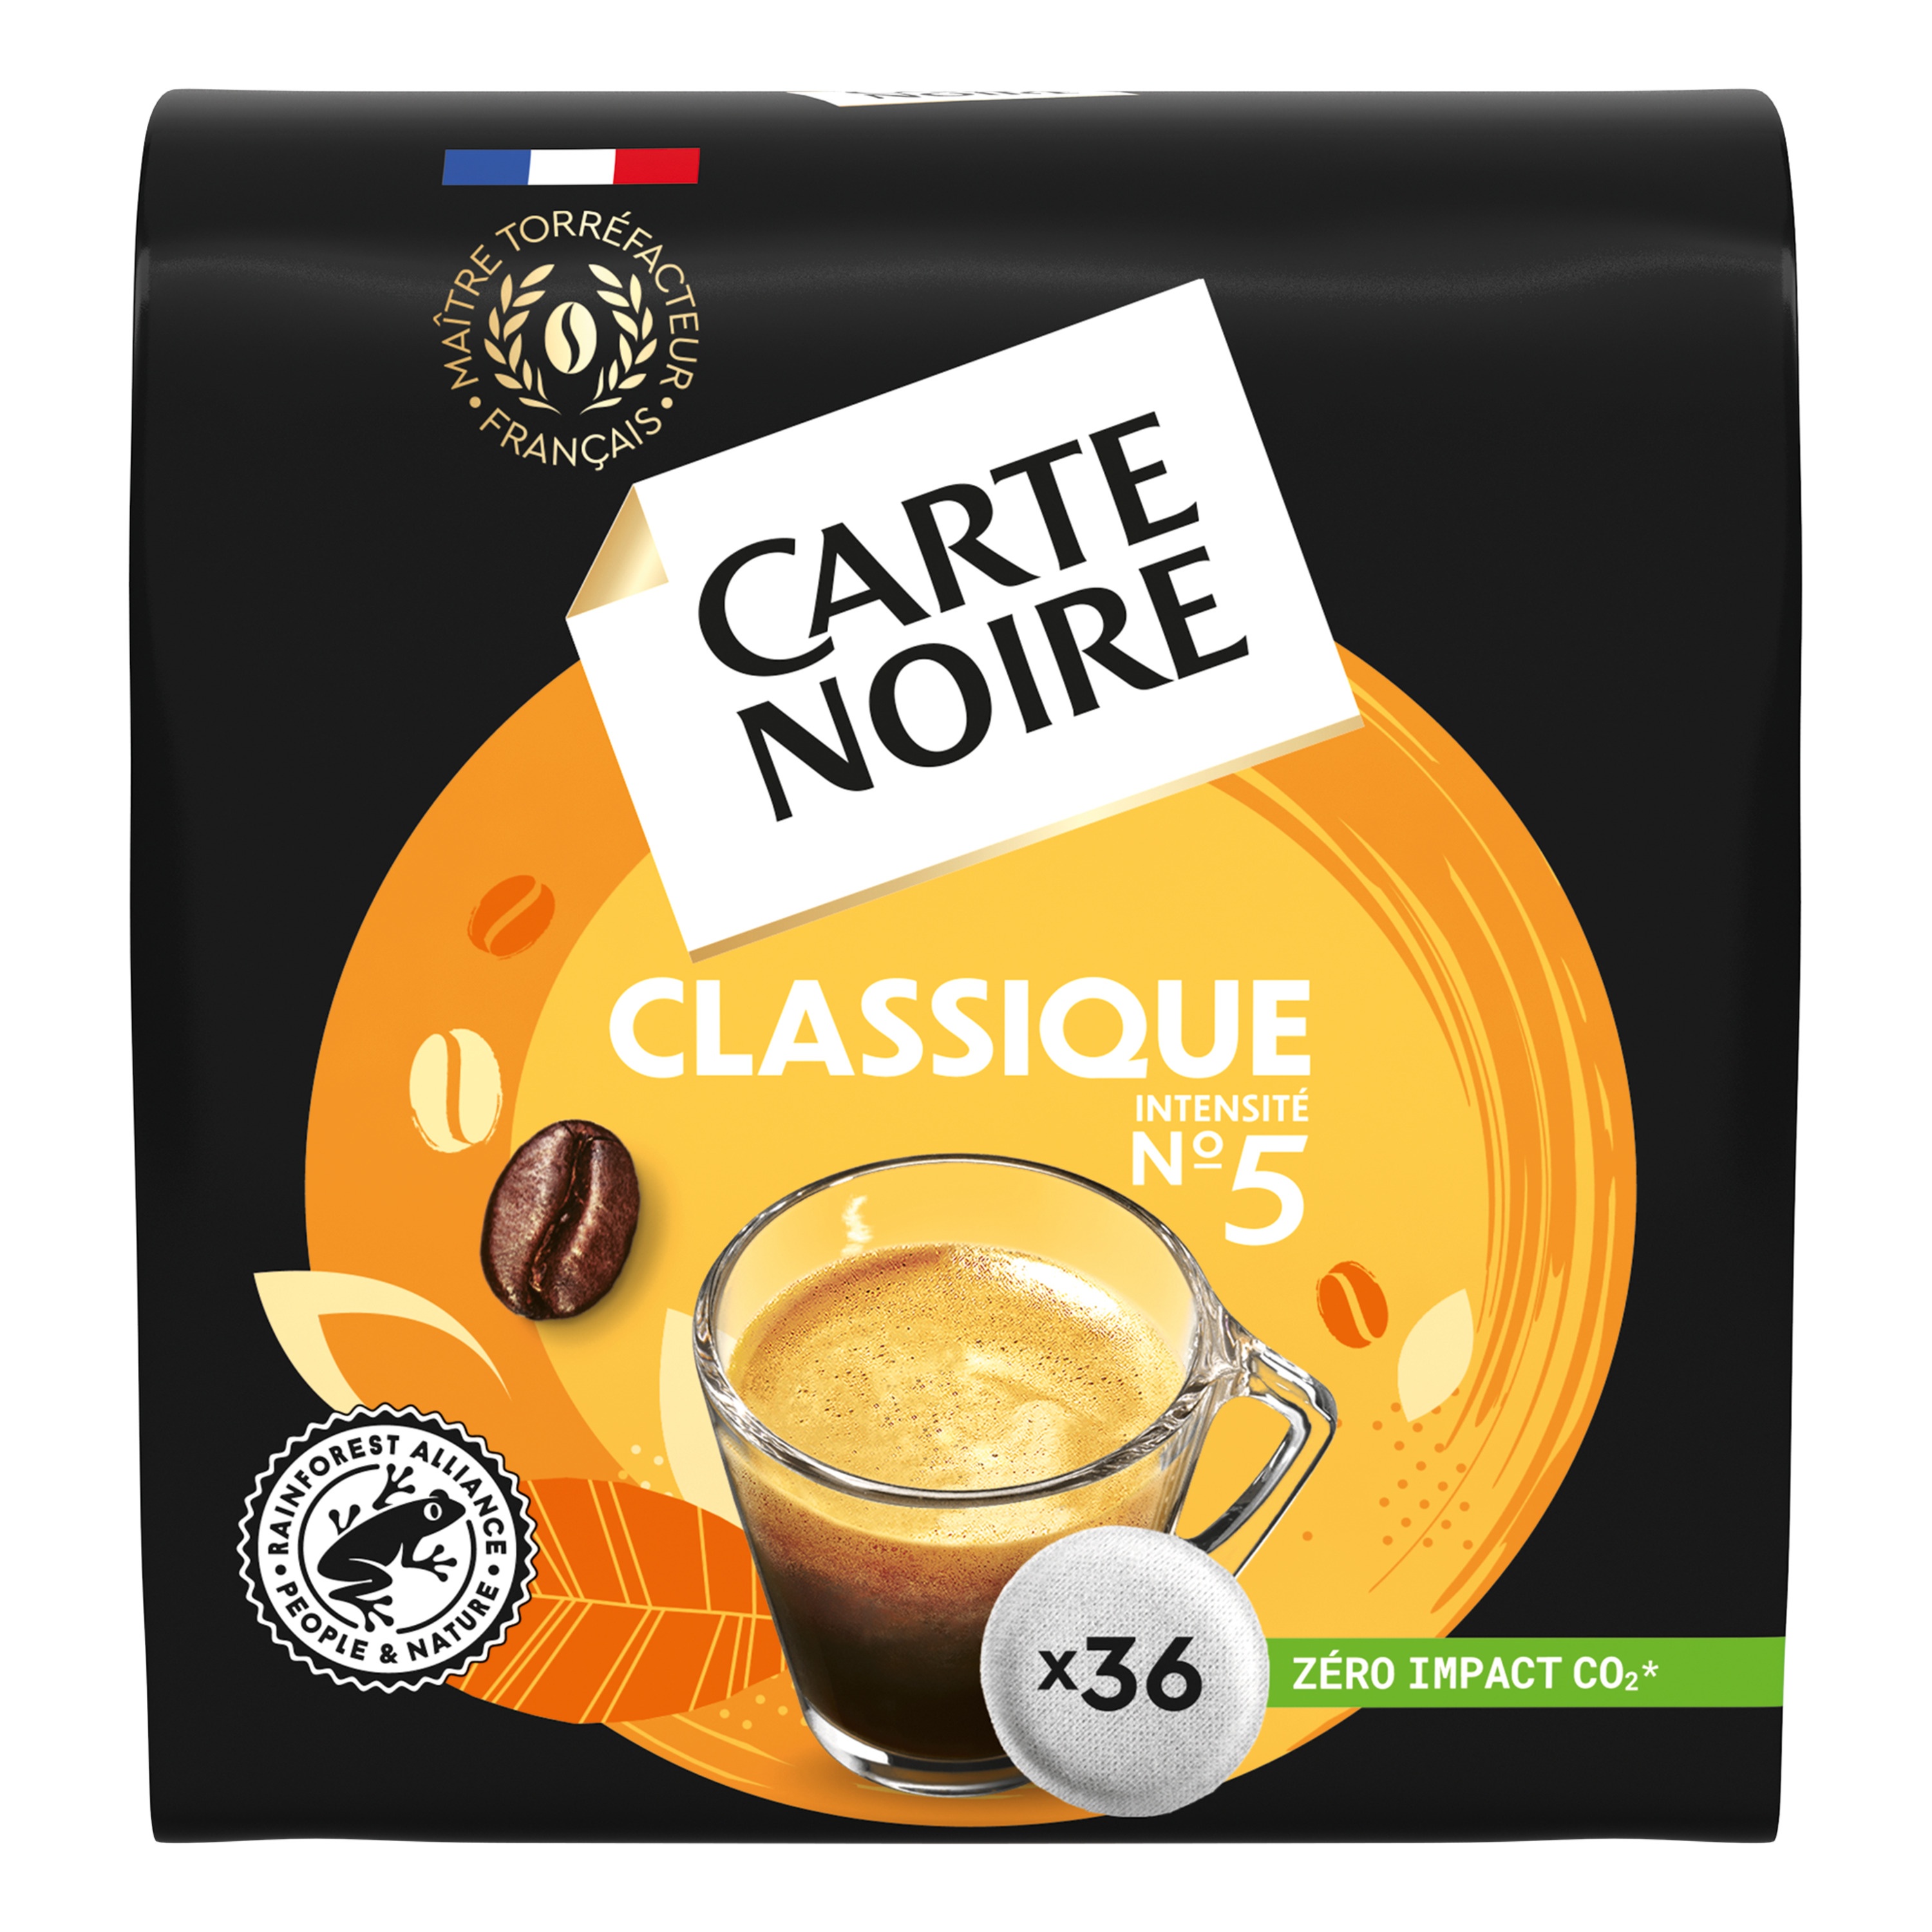 CARTE NOIRE Dosettes de café classique N°60